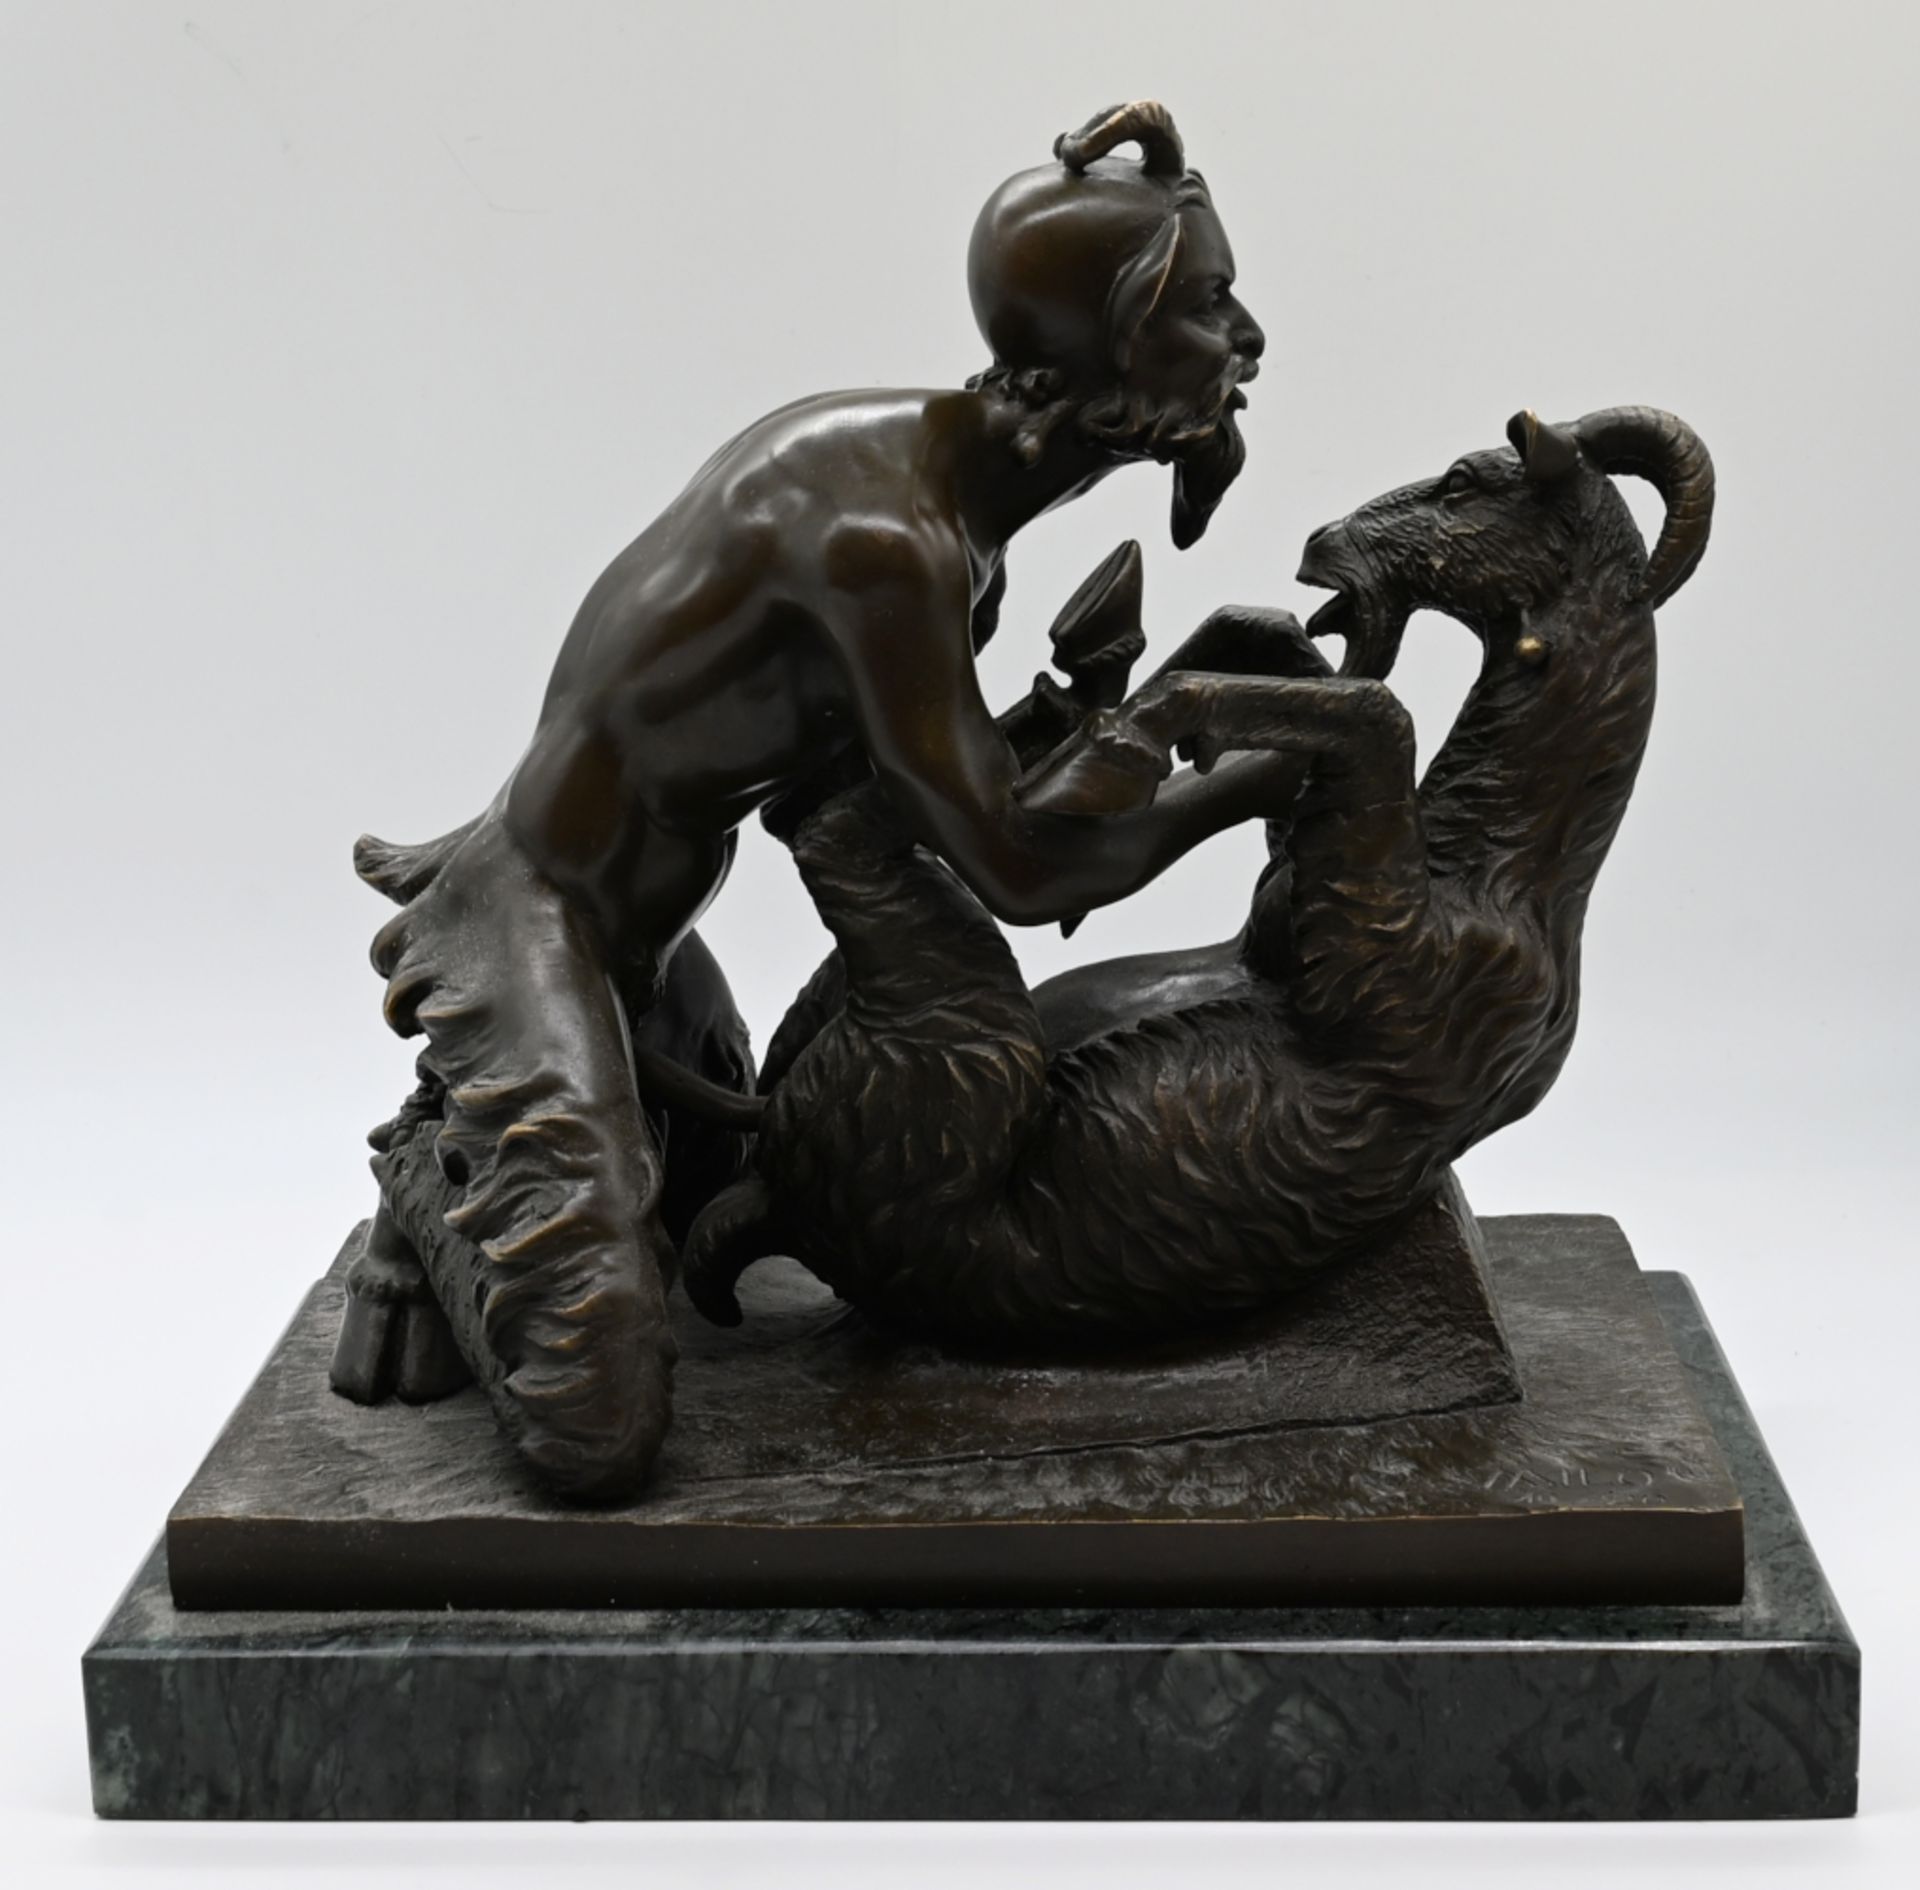 1 Figurengruppe Bronze "Faun mit Ziege" Replik nach antikem Vorbild aus Pompeji, bez. "Milo" (wohl M